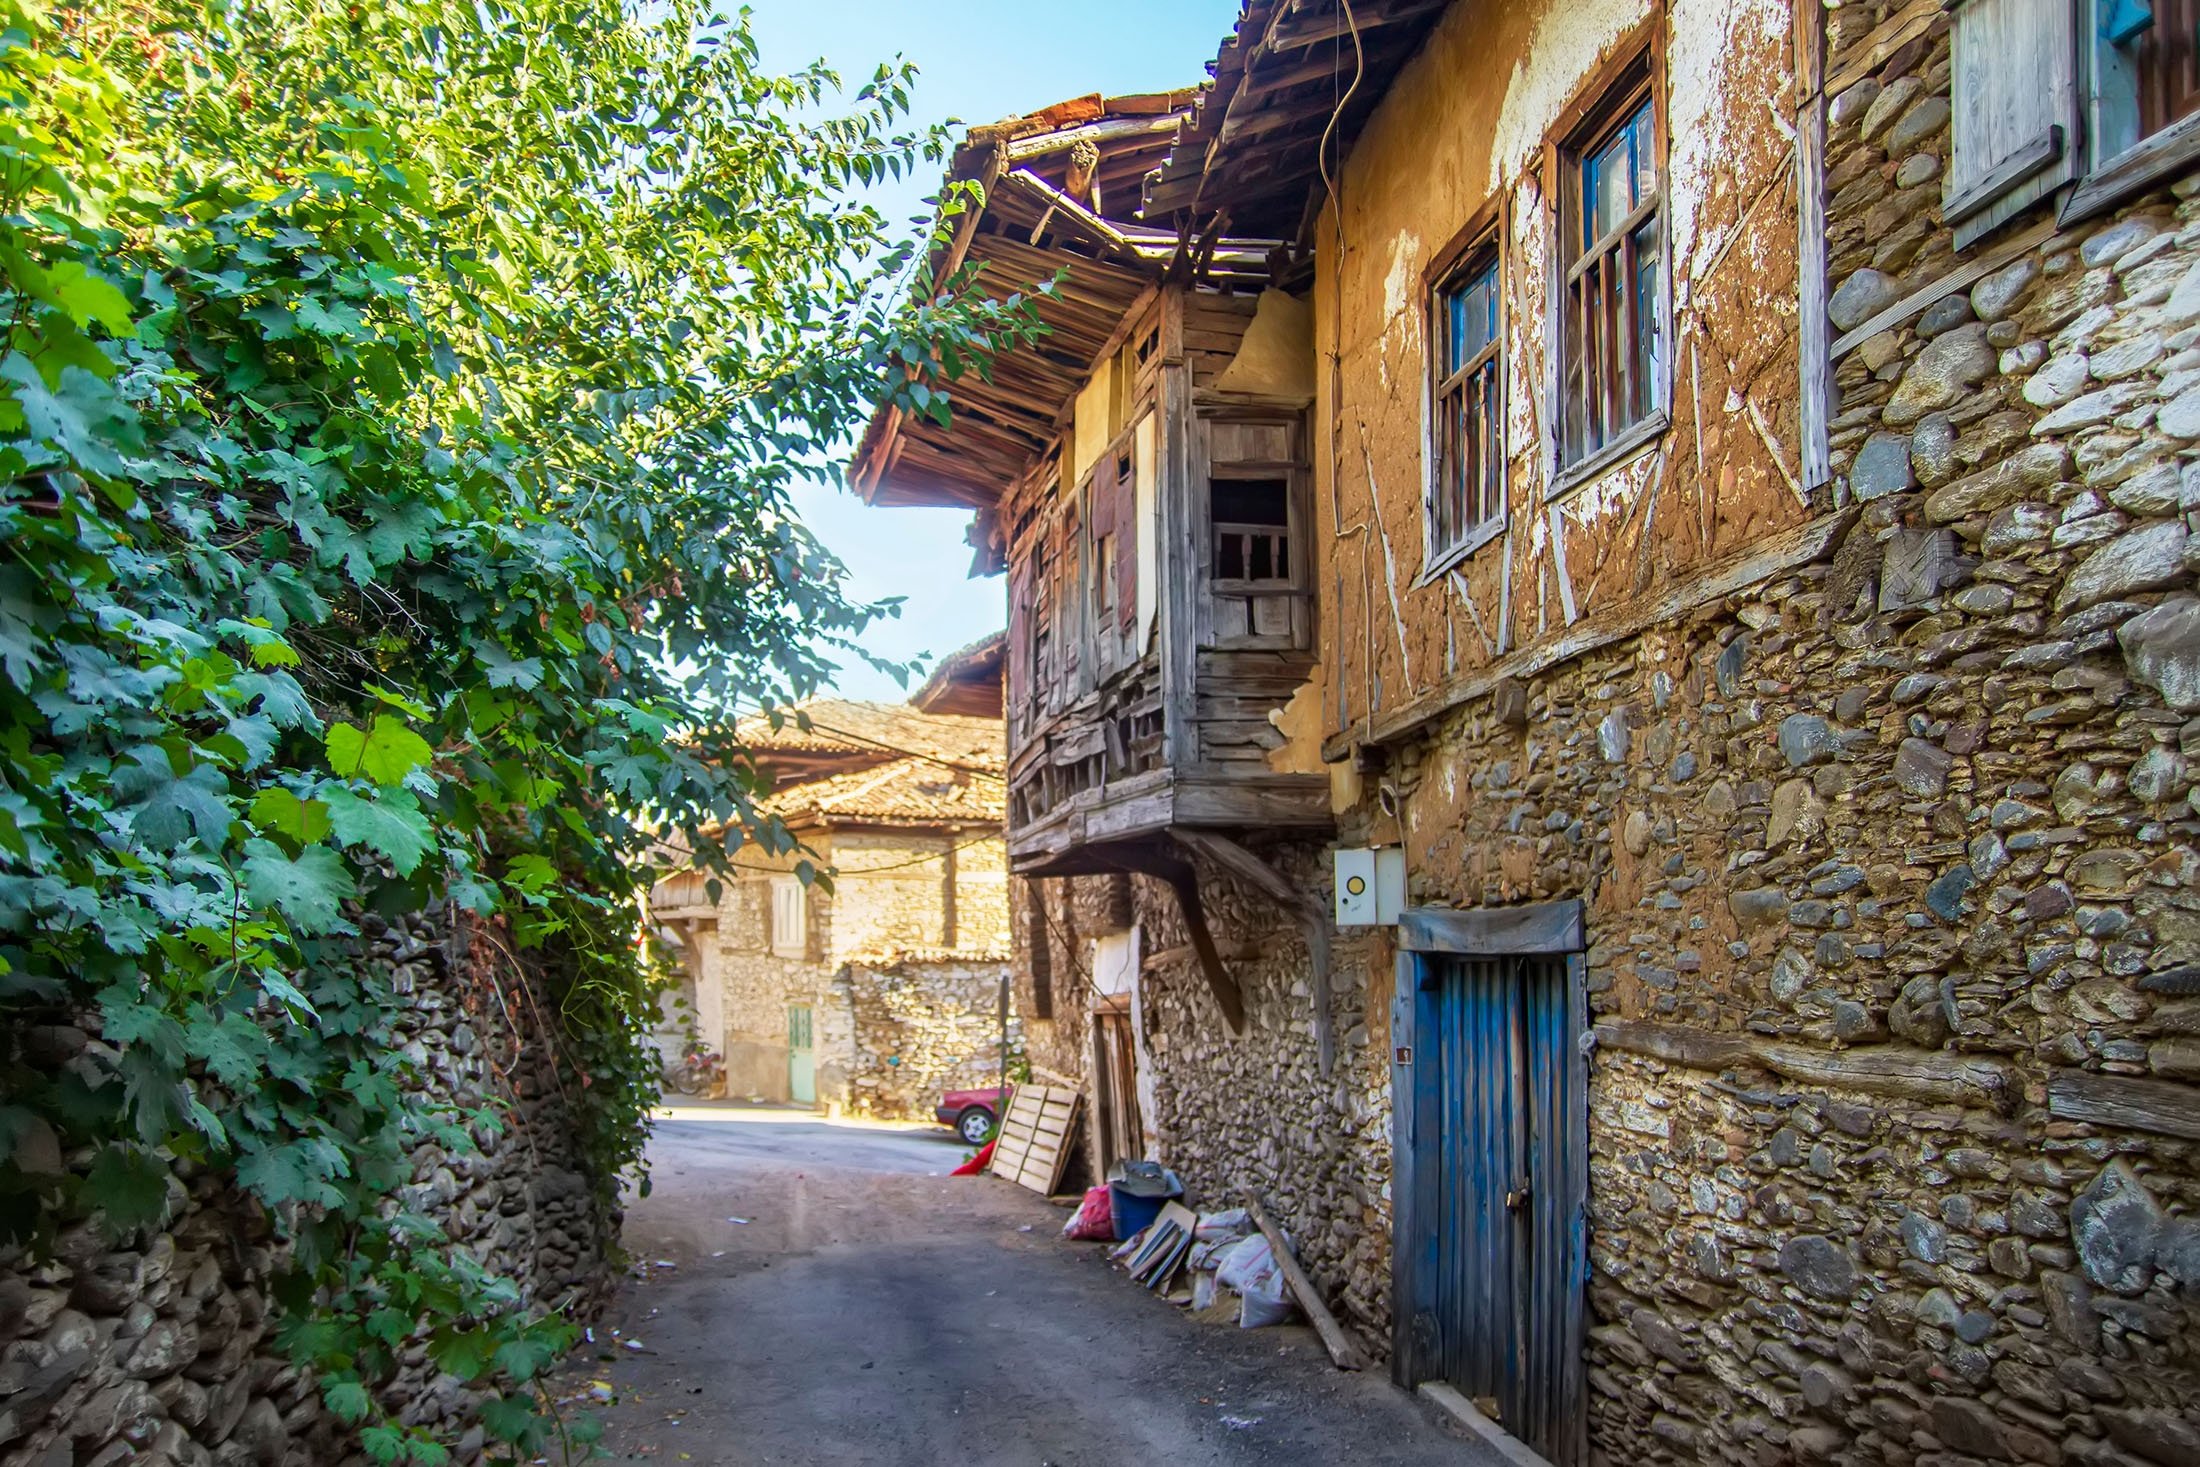 Terkenal karena keramahannya, sebagian besar rumah pedesaan di Turki beroperasi seolah-olah memiliki pintu berputar, dengan tetangga, teman, dan keluarga yang secara teratur muncul. (Foto Shutterstock)